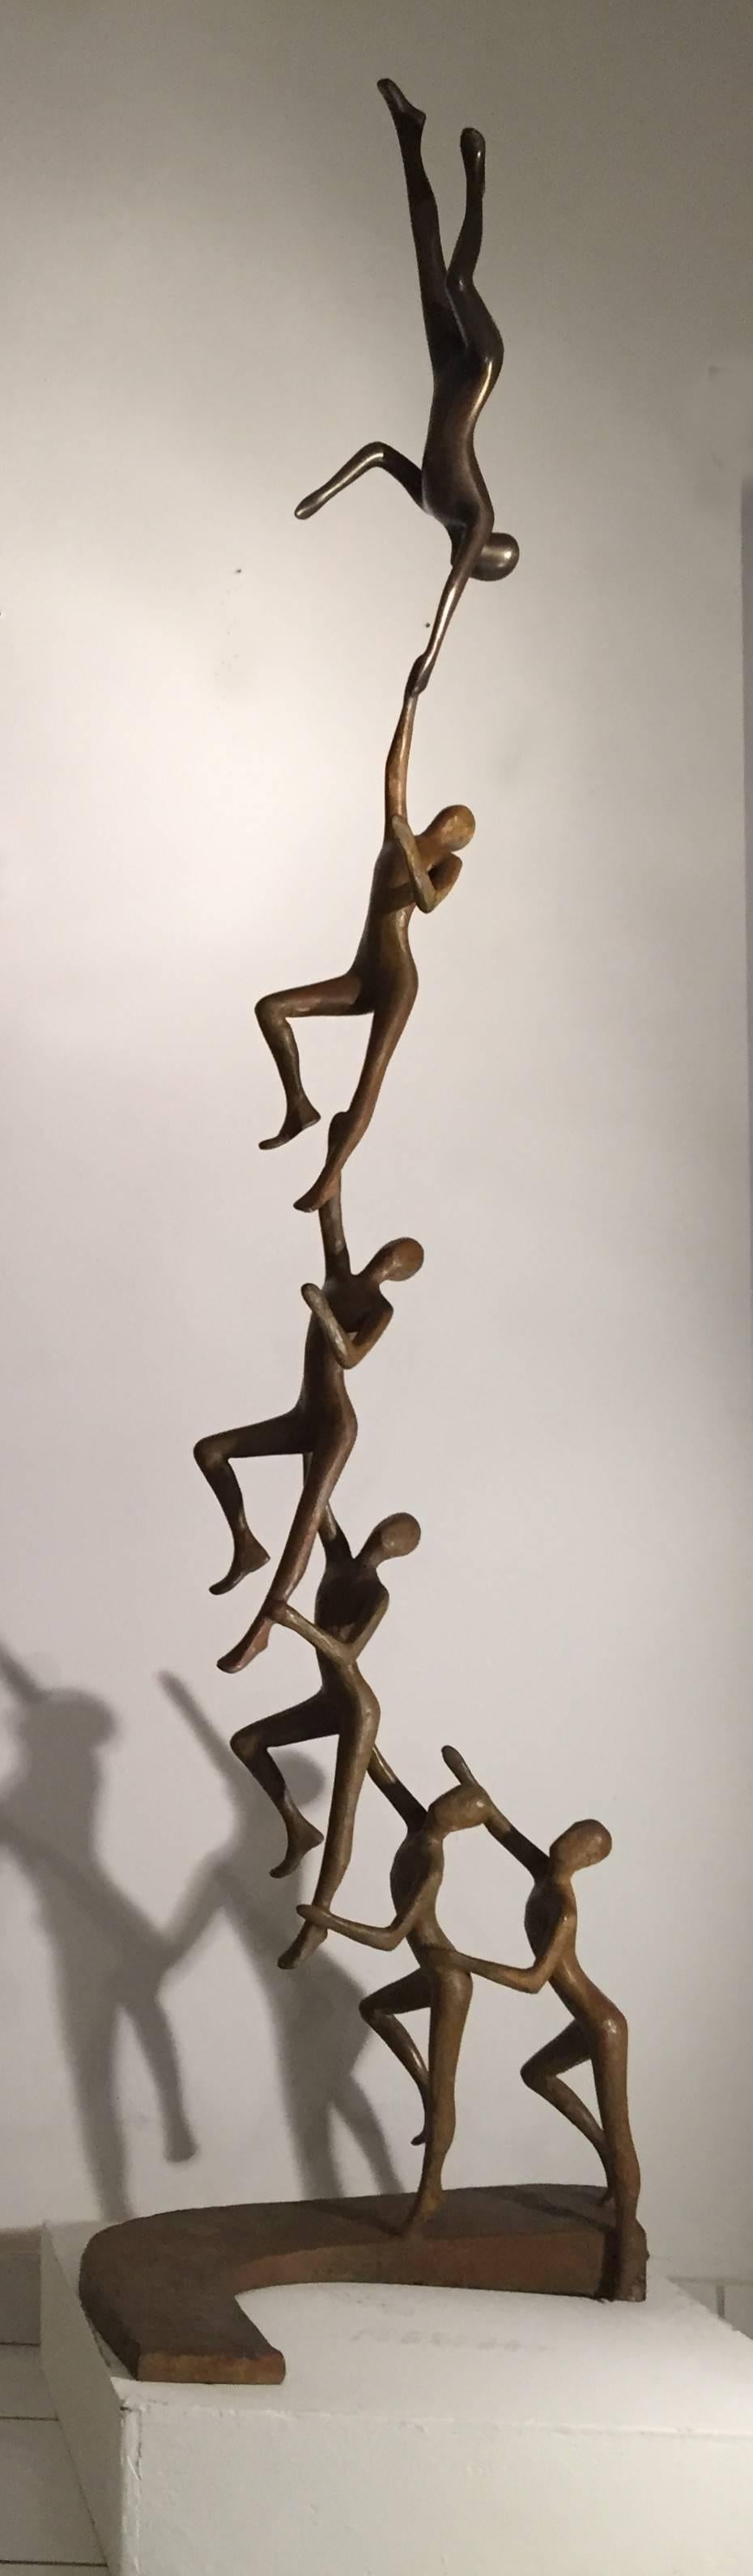 connection sculpture